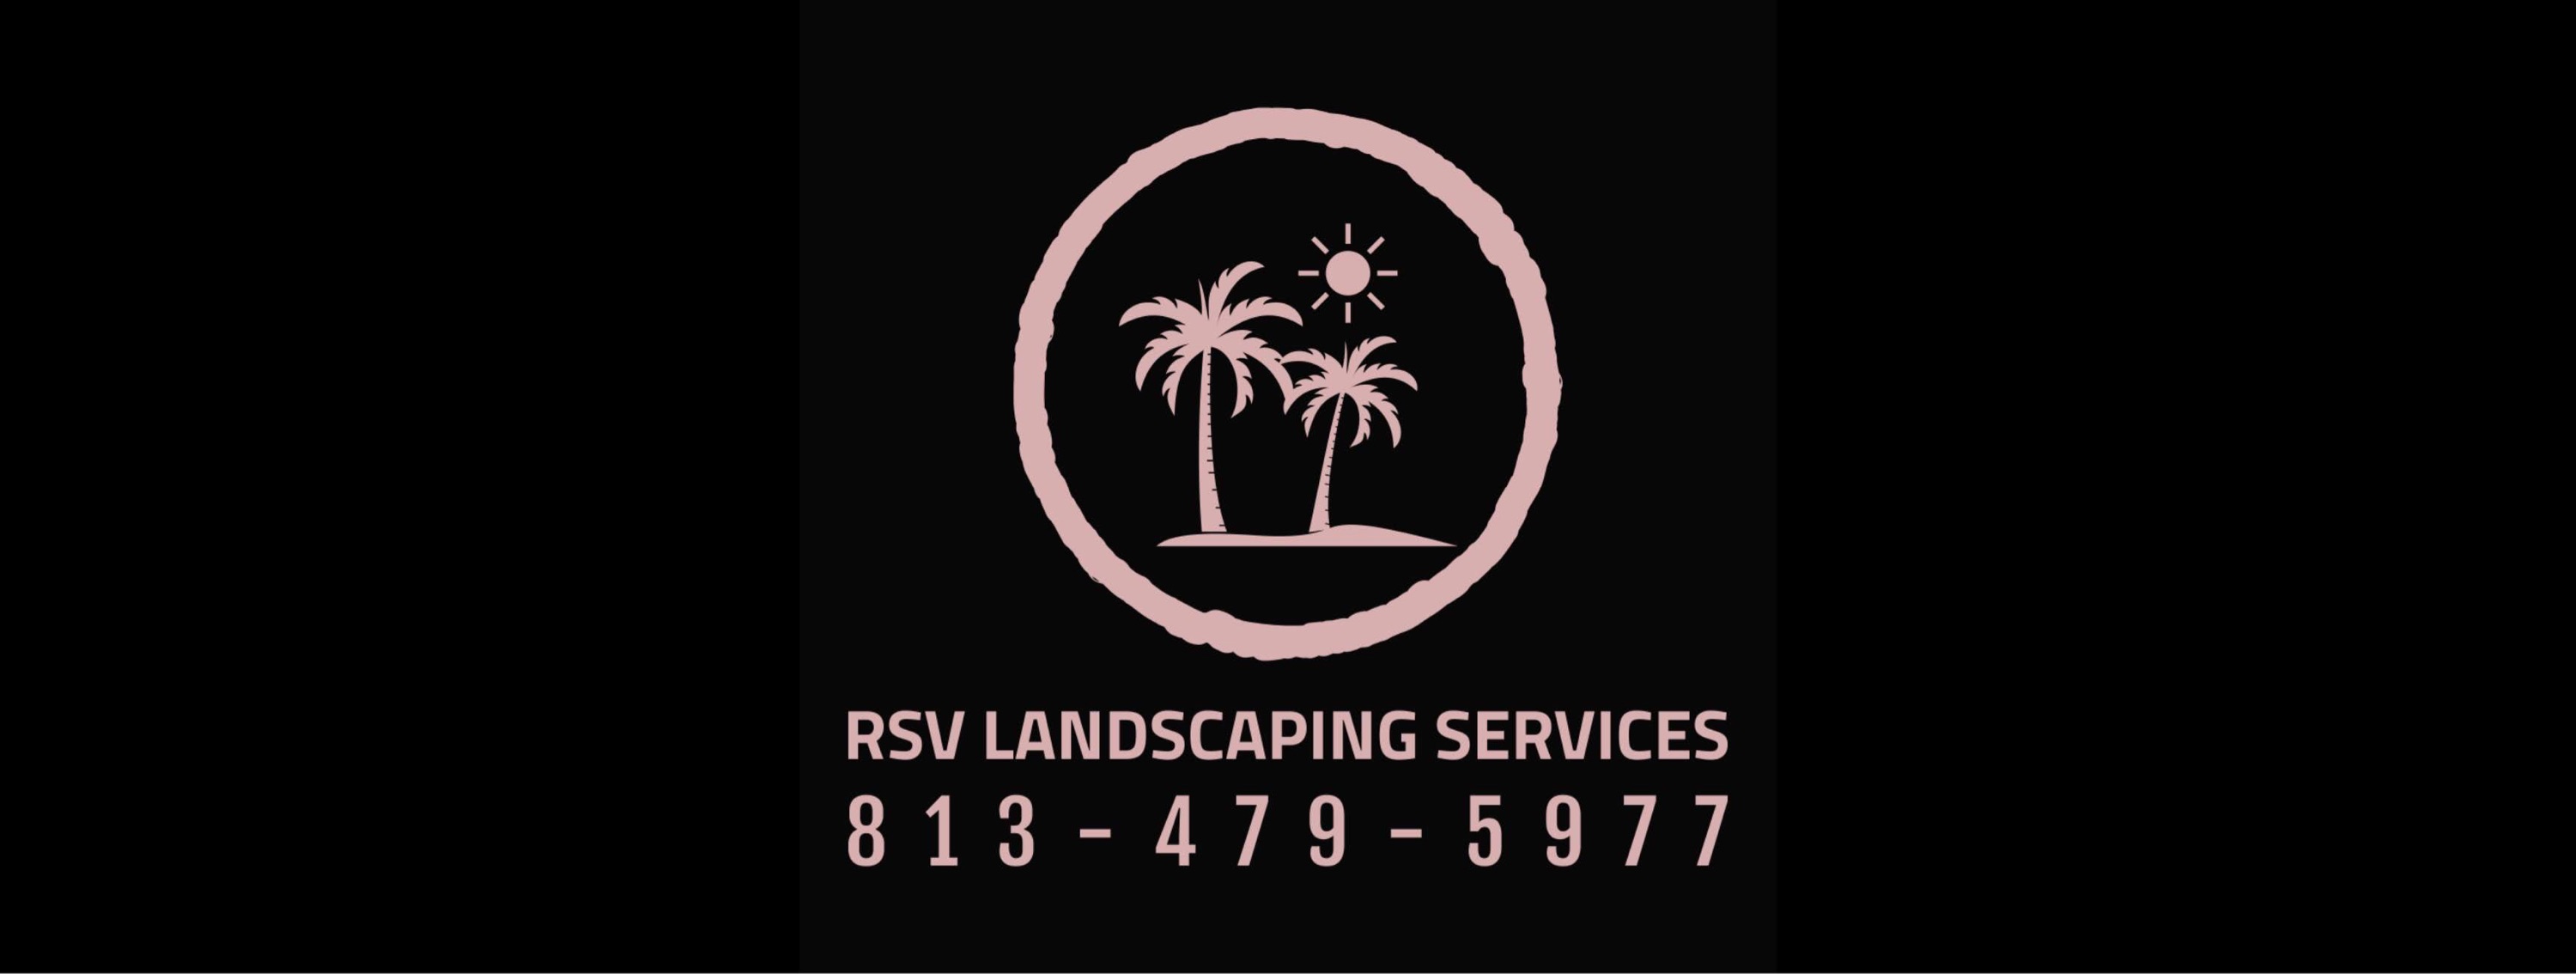 RSV Landscaping Services Logo